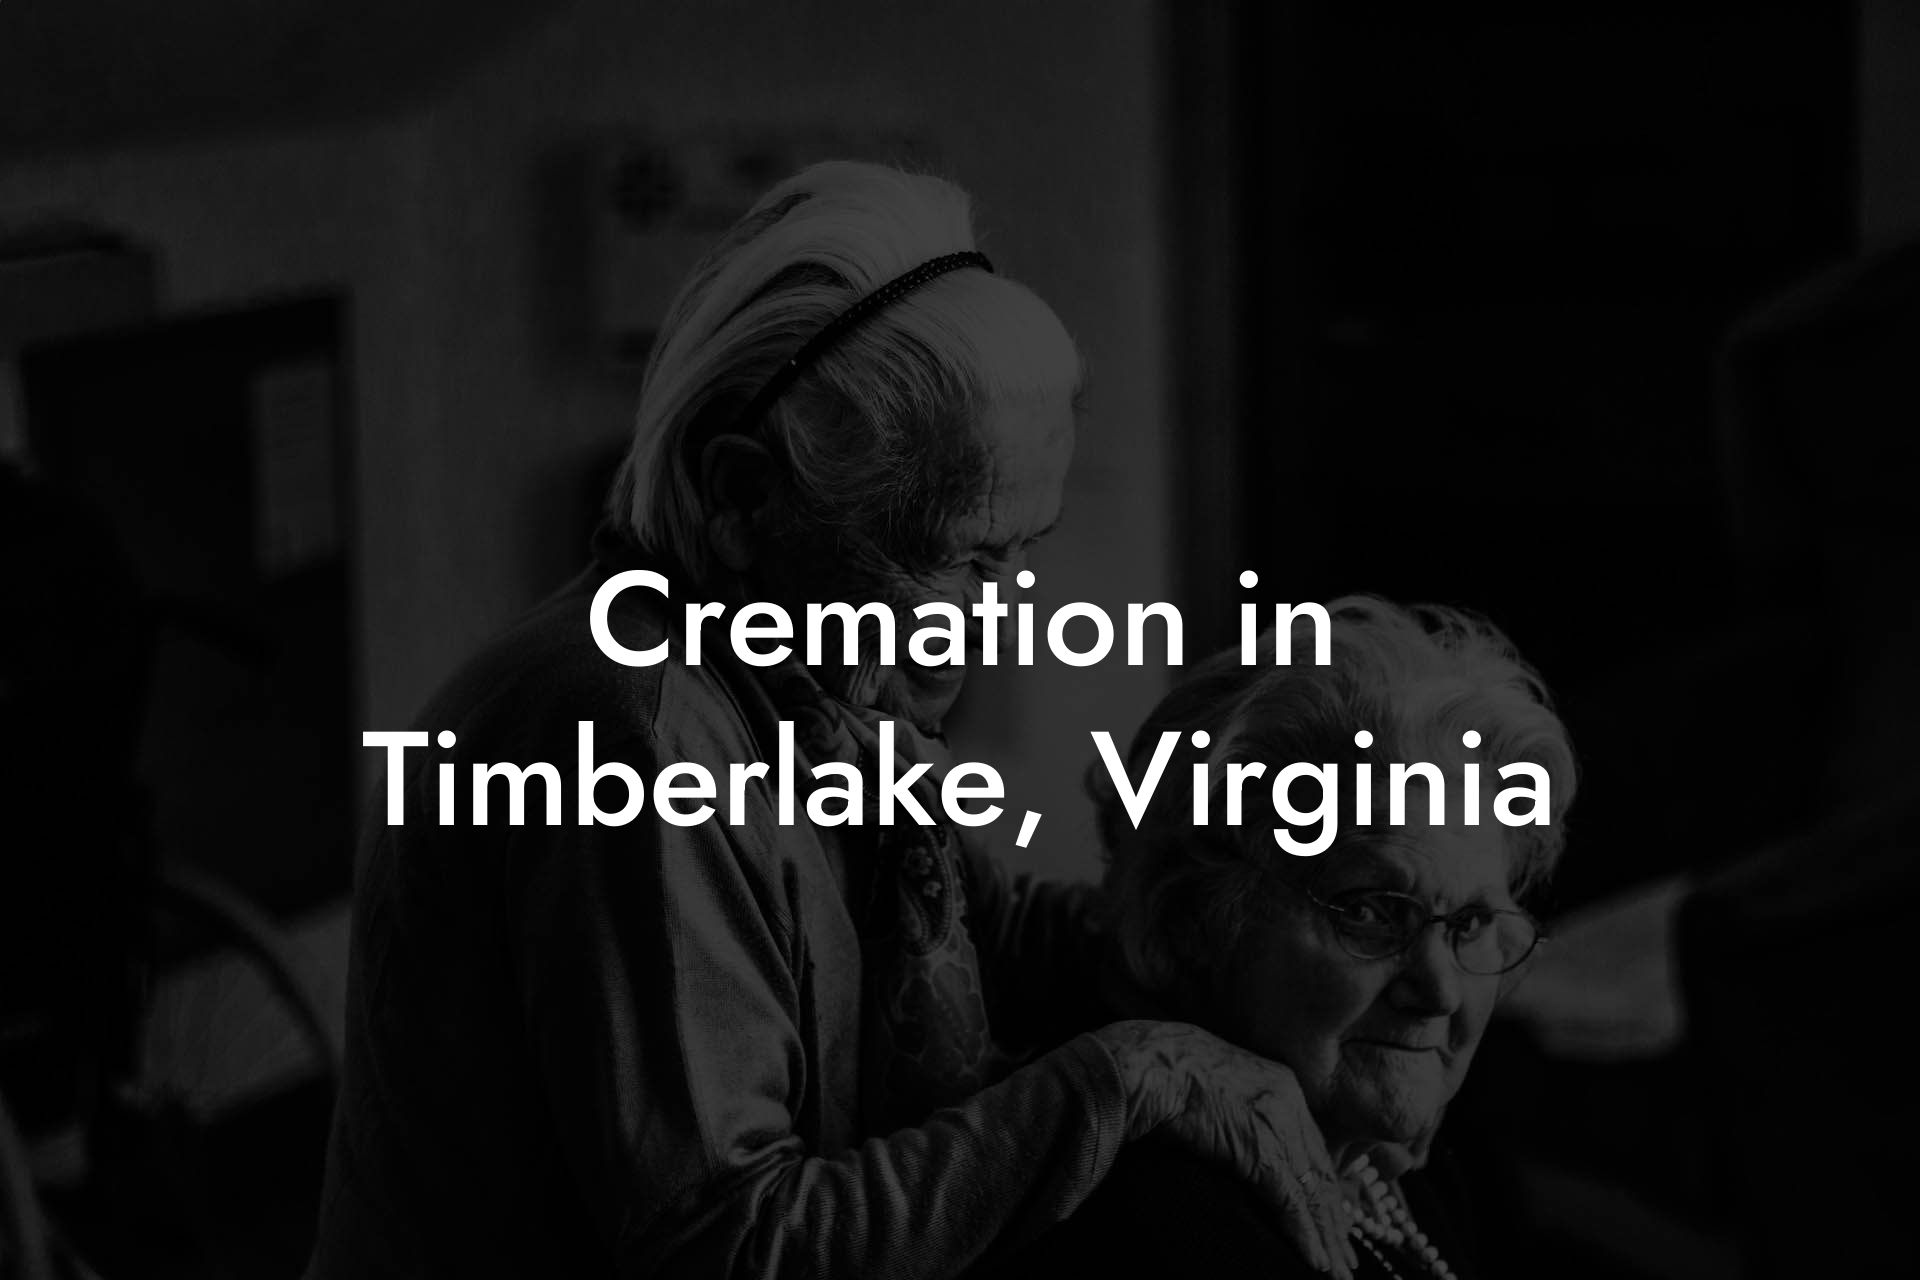 Cremation in Timberlake, Virginia